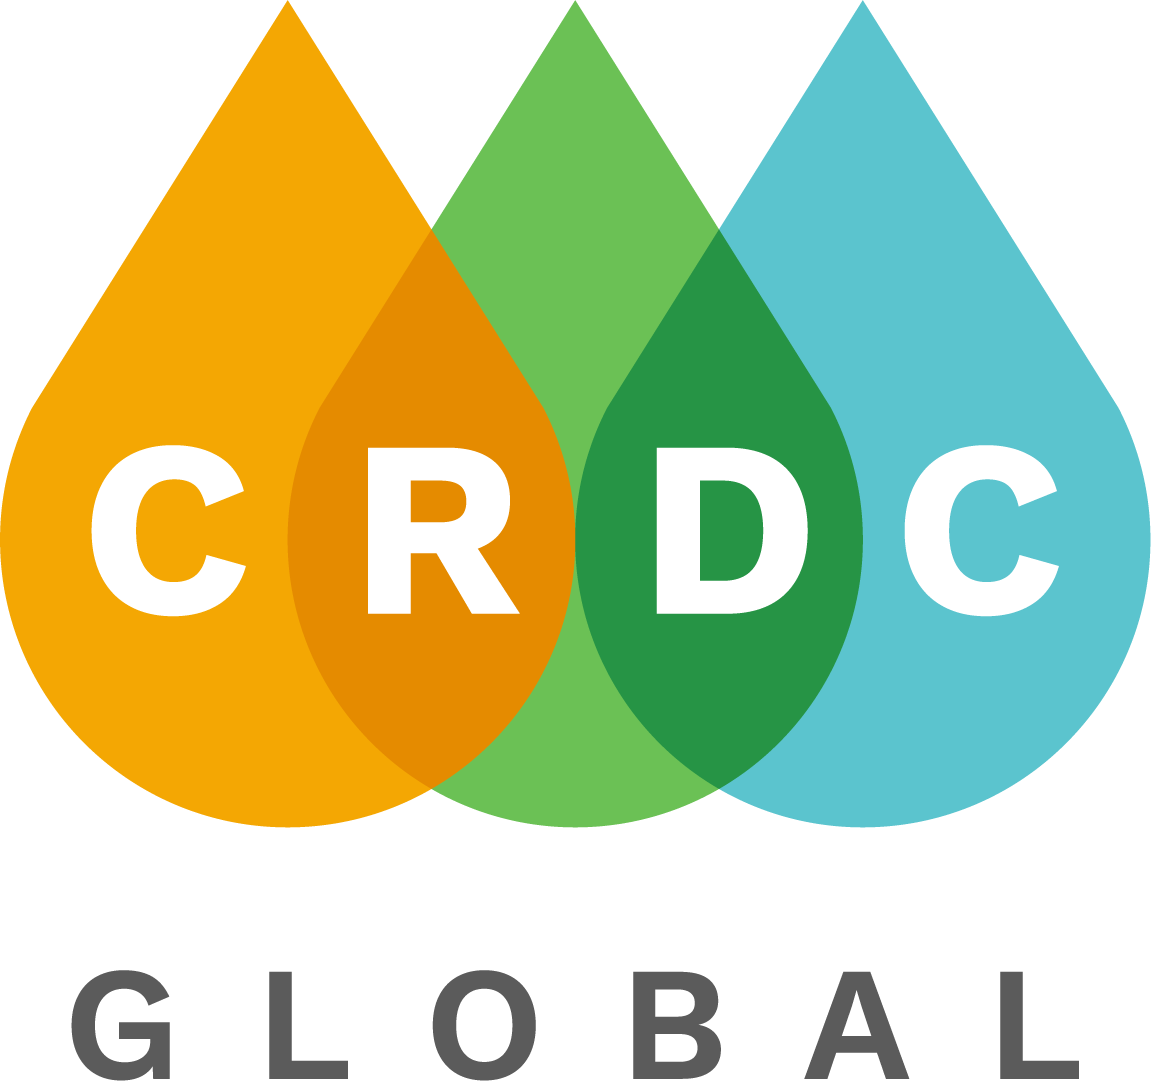 CRDC Global